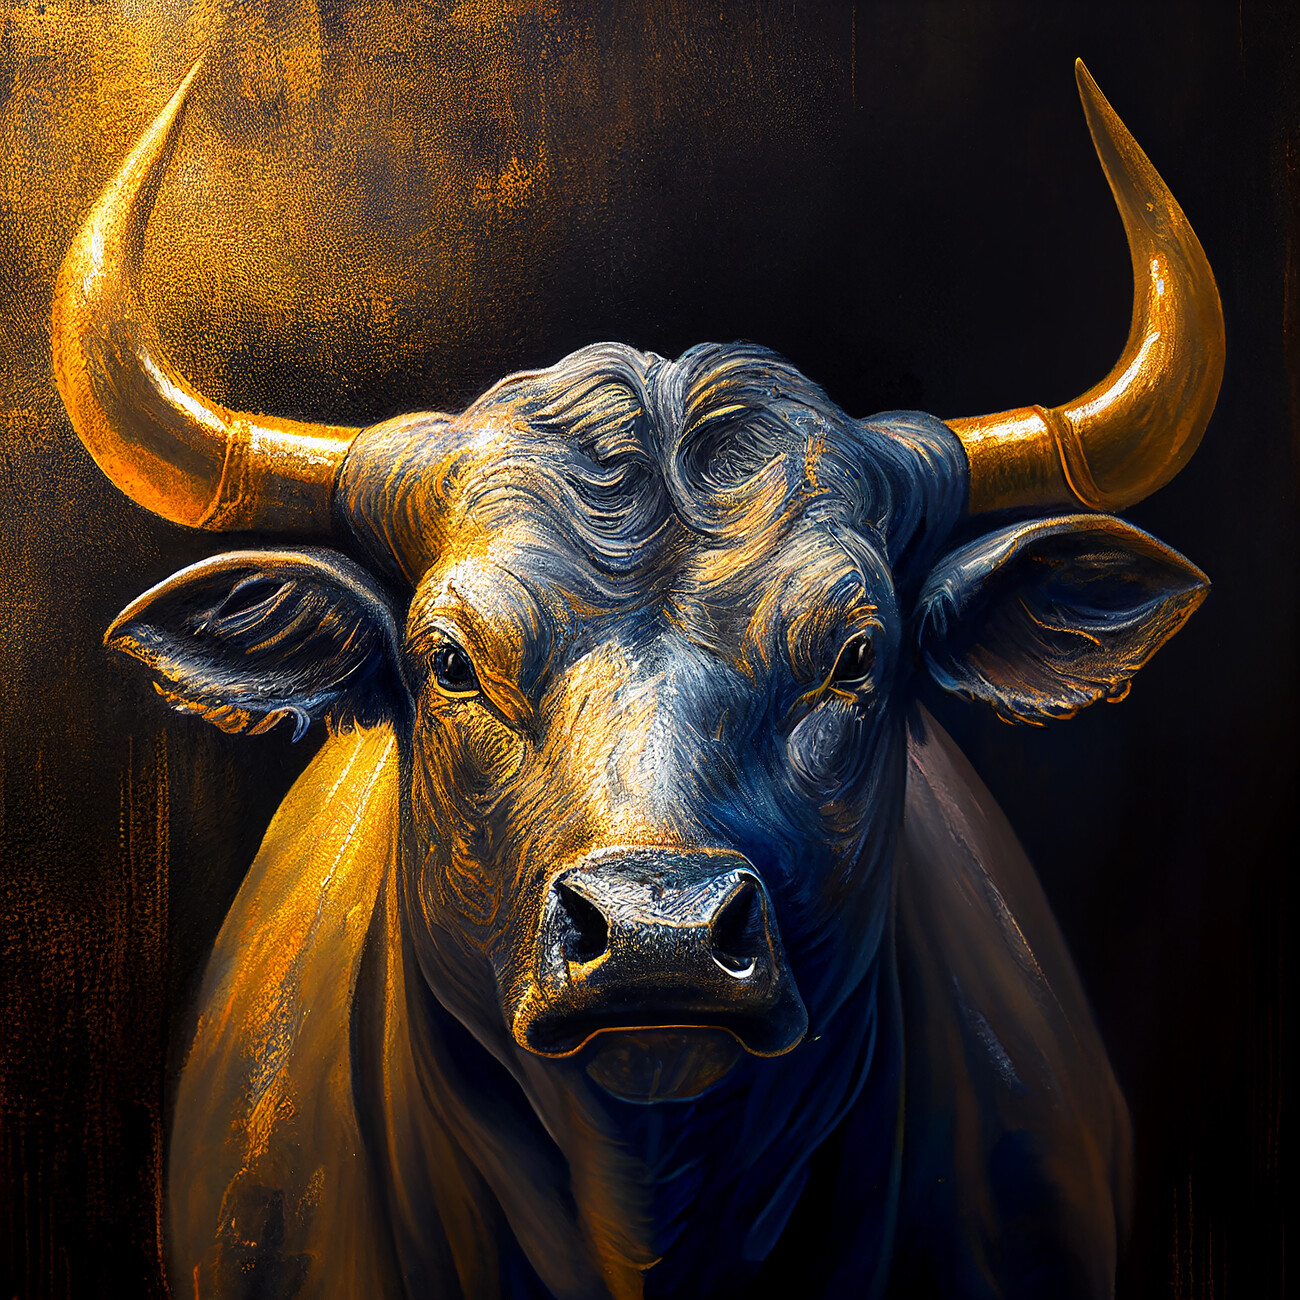 Taiteelliset kuva | Golden Bull | Europosters